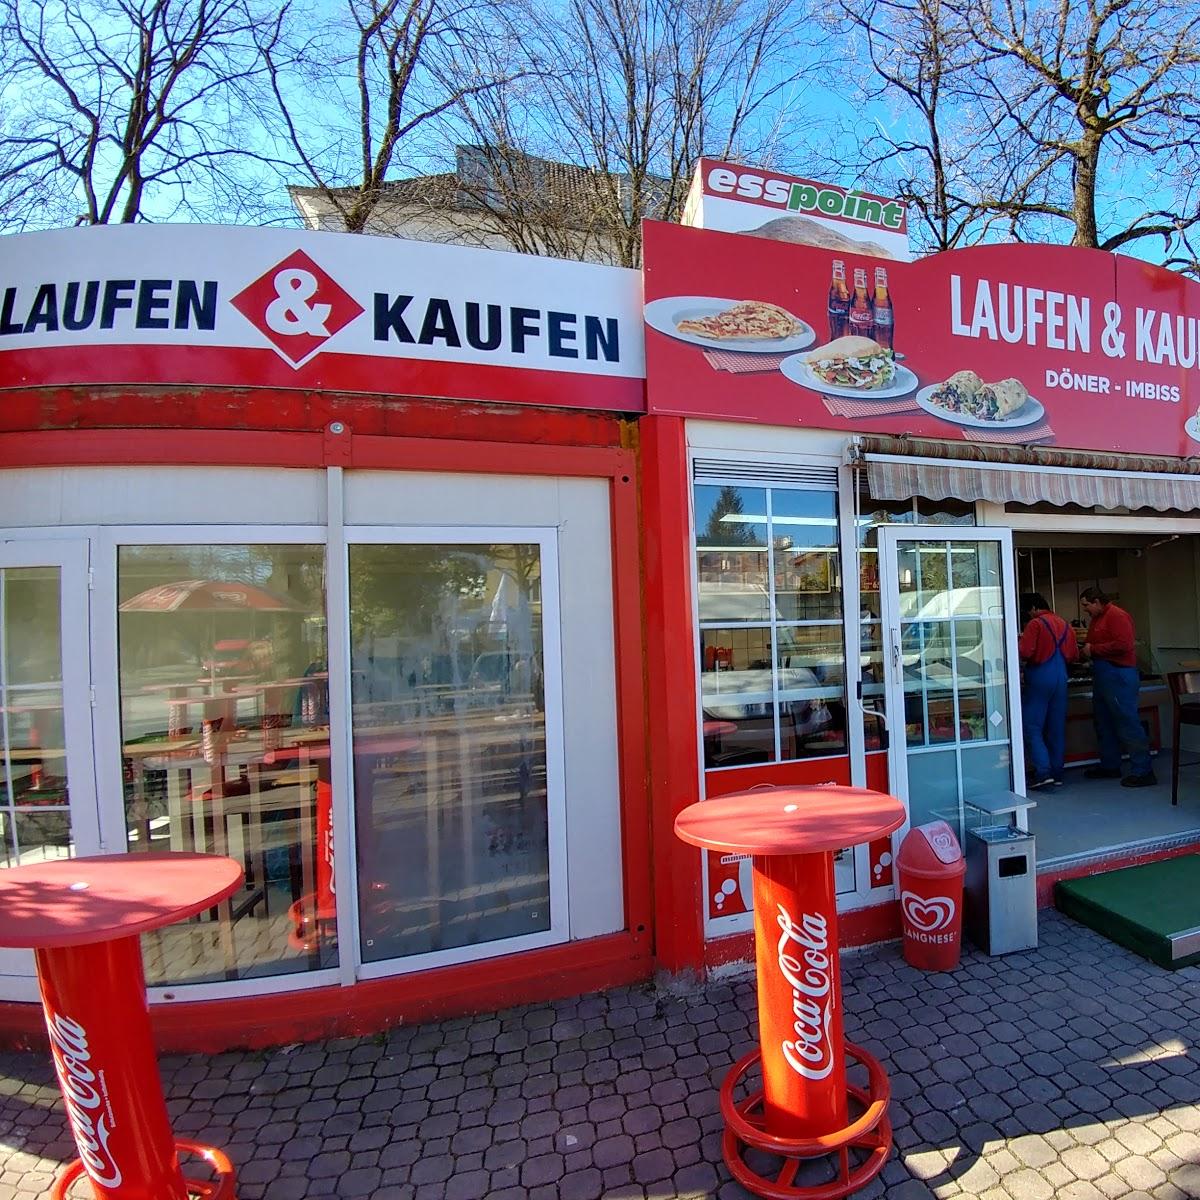 Restaurant "Laufen & Kaufen" in München